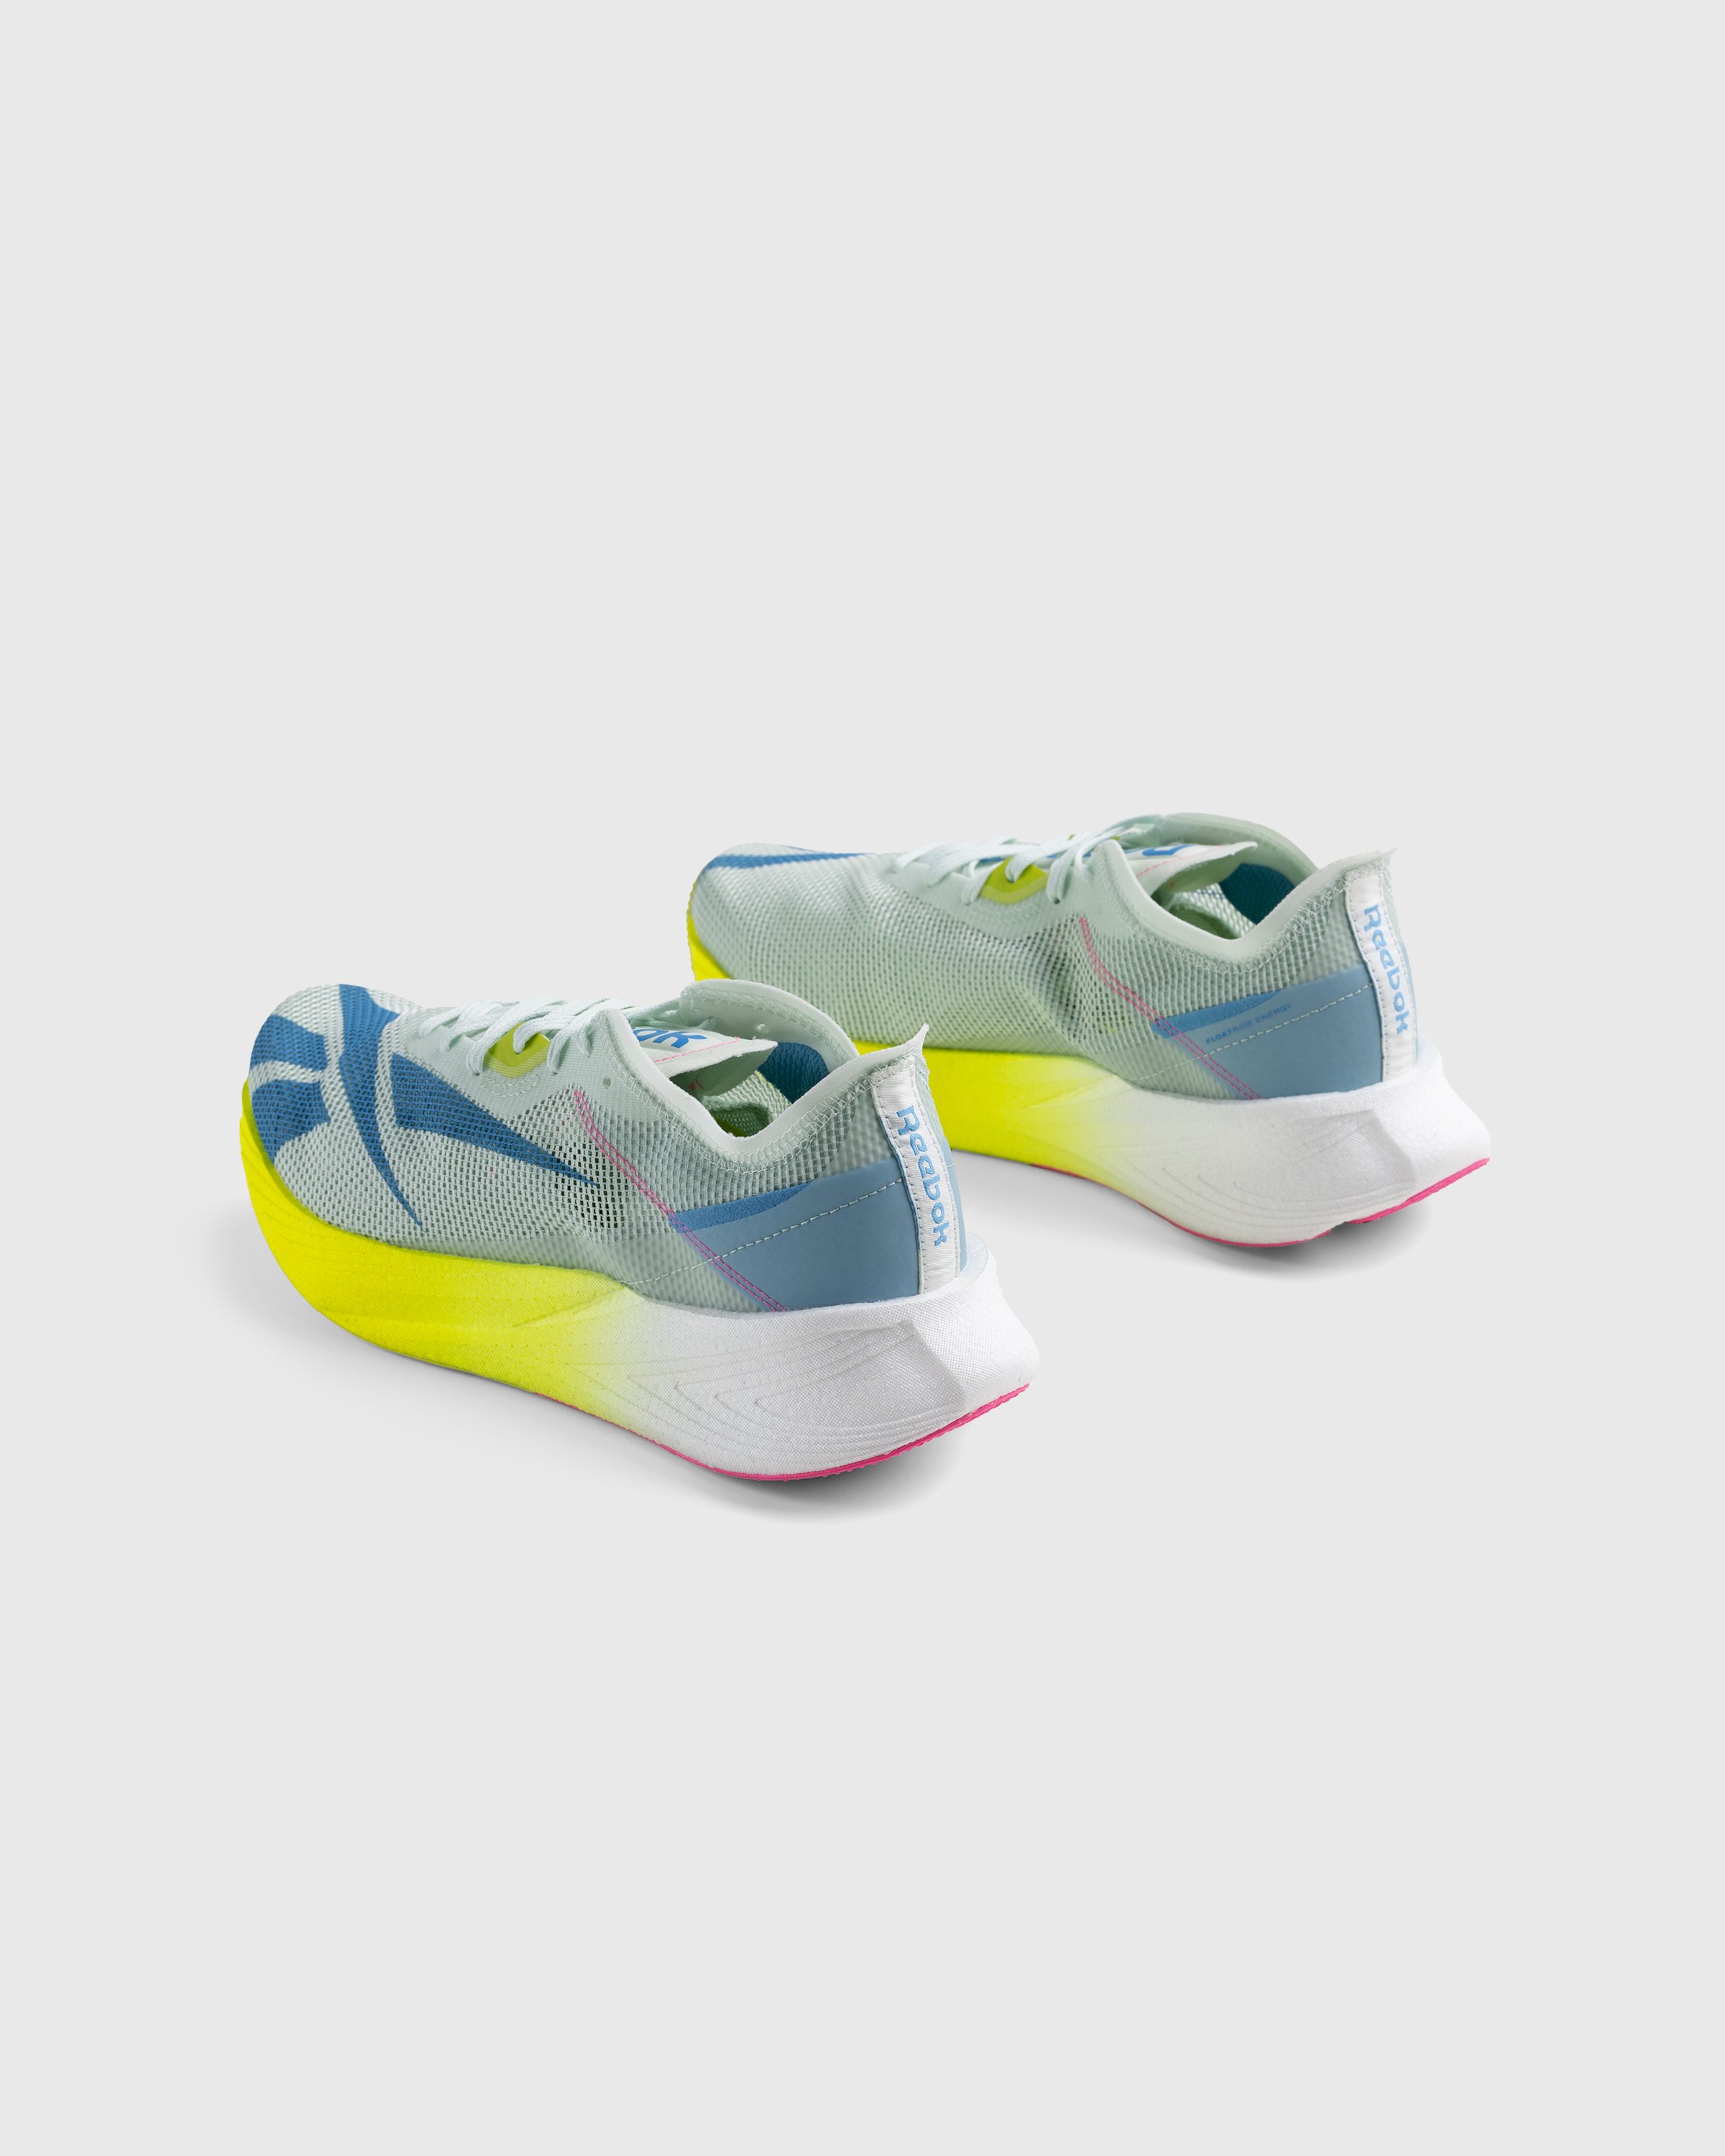 Reebok - Floatride Energy X Yellow/Blue - Footwear - Multi - Image 5